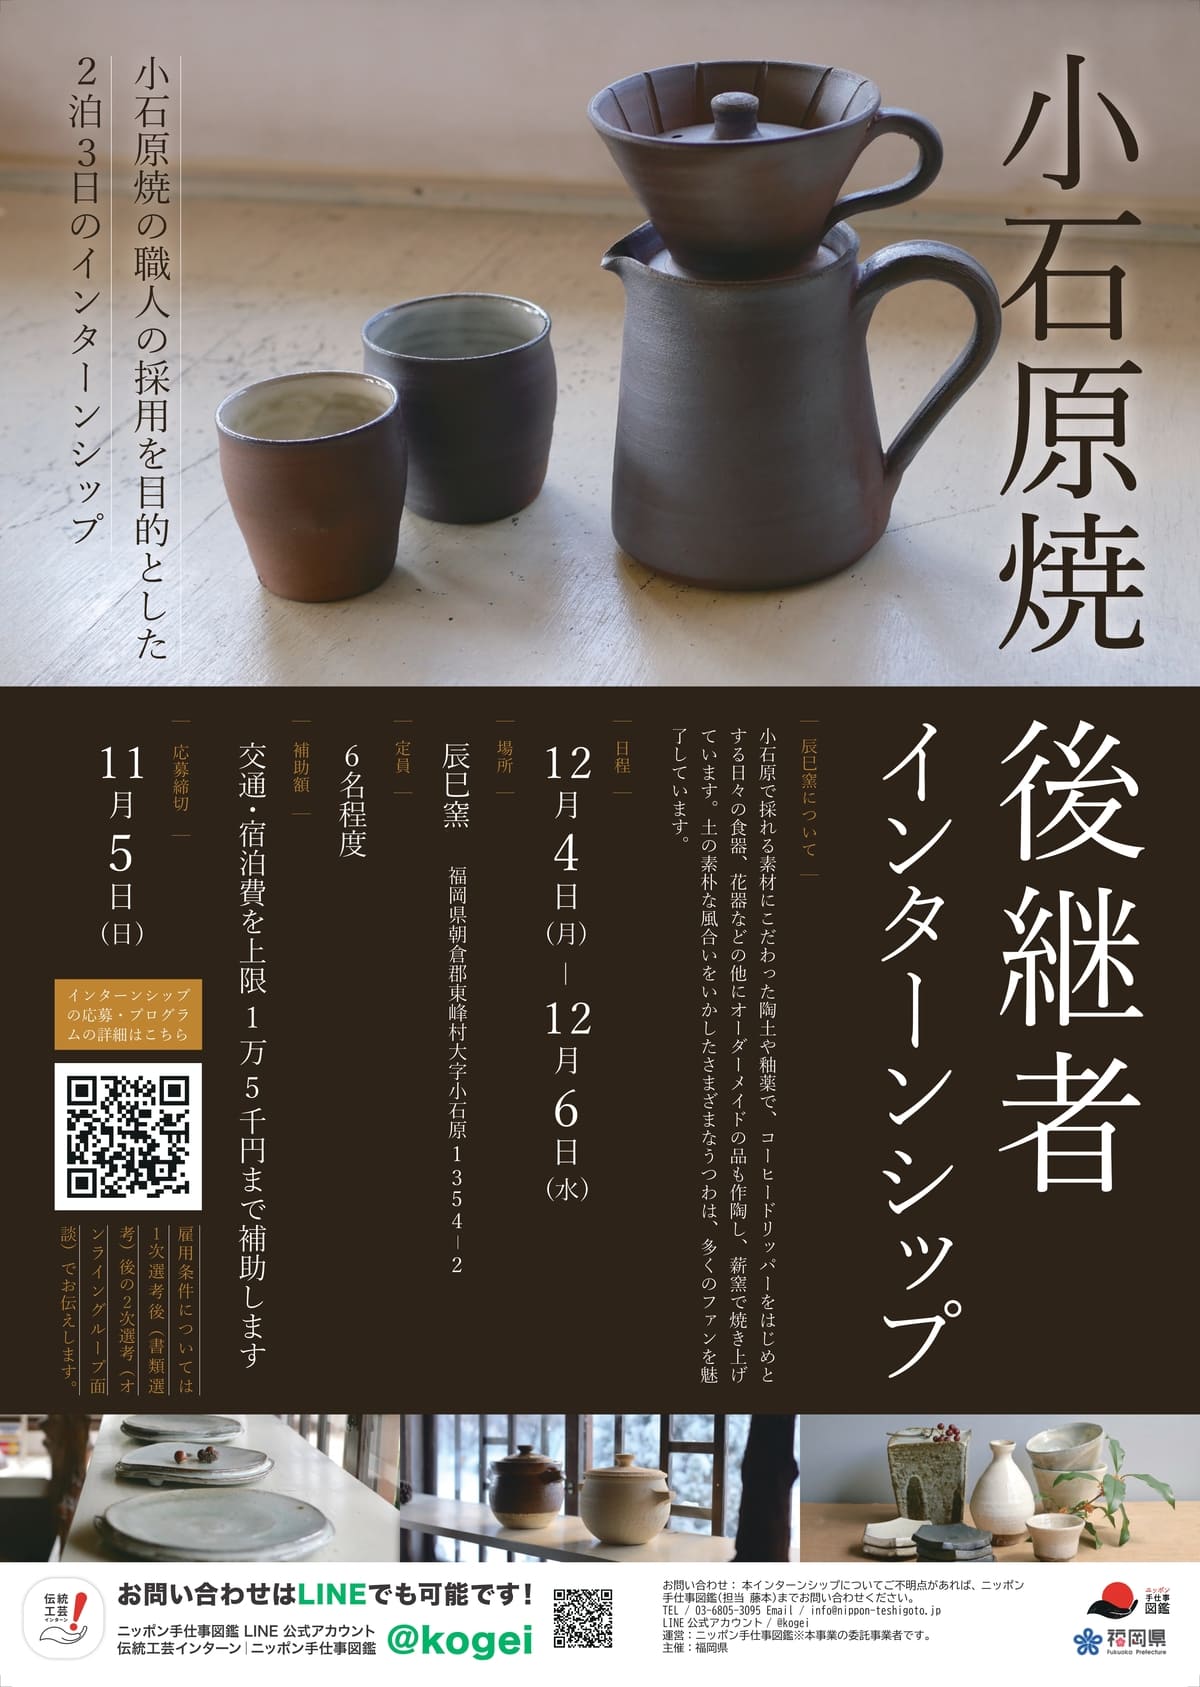 福岡県県伝統工芸品 小石原焼後継者インターンシップポスター